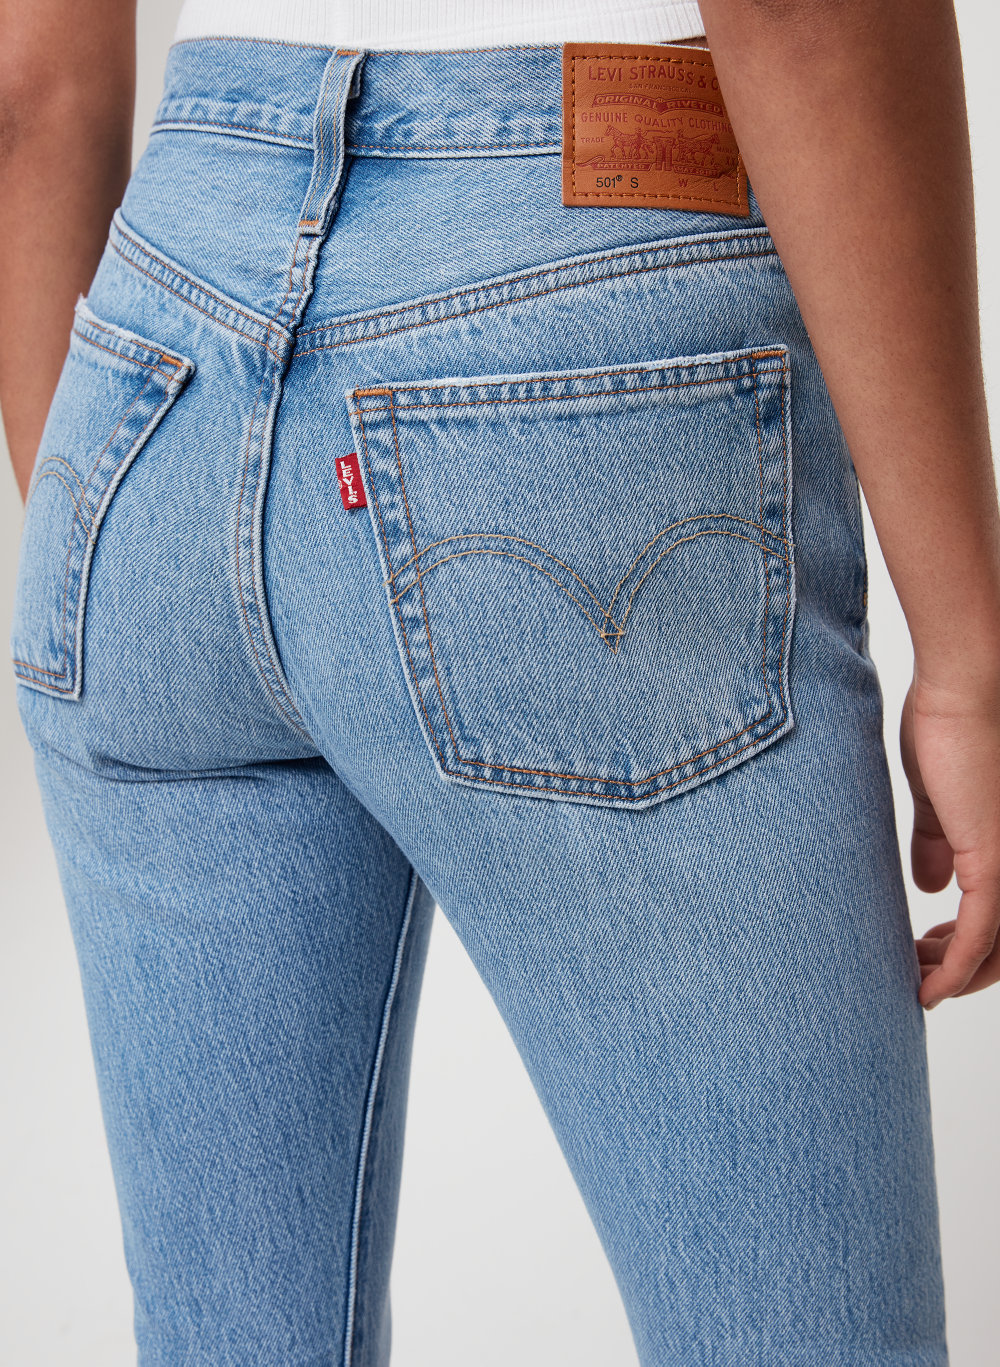 Levi's 501 Skinny Jeans Sale | NAR Media Kit